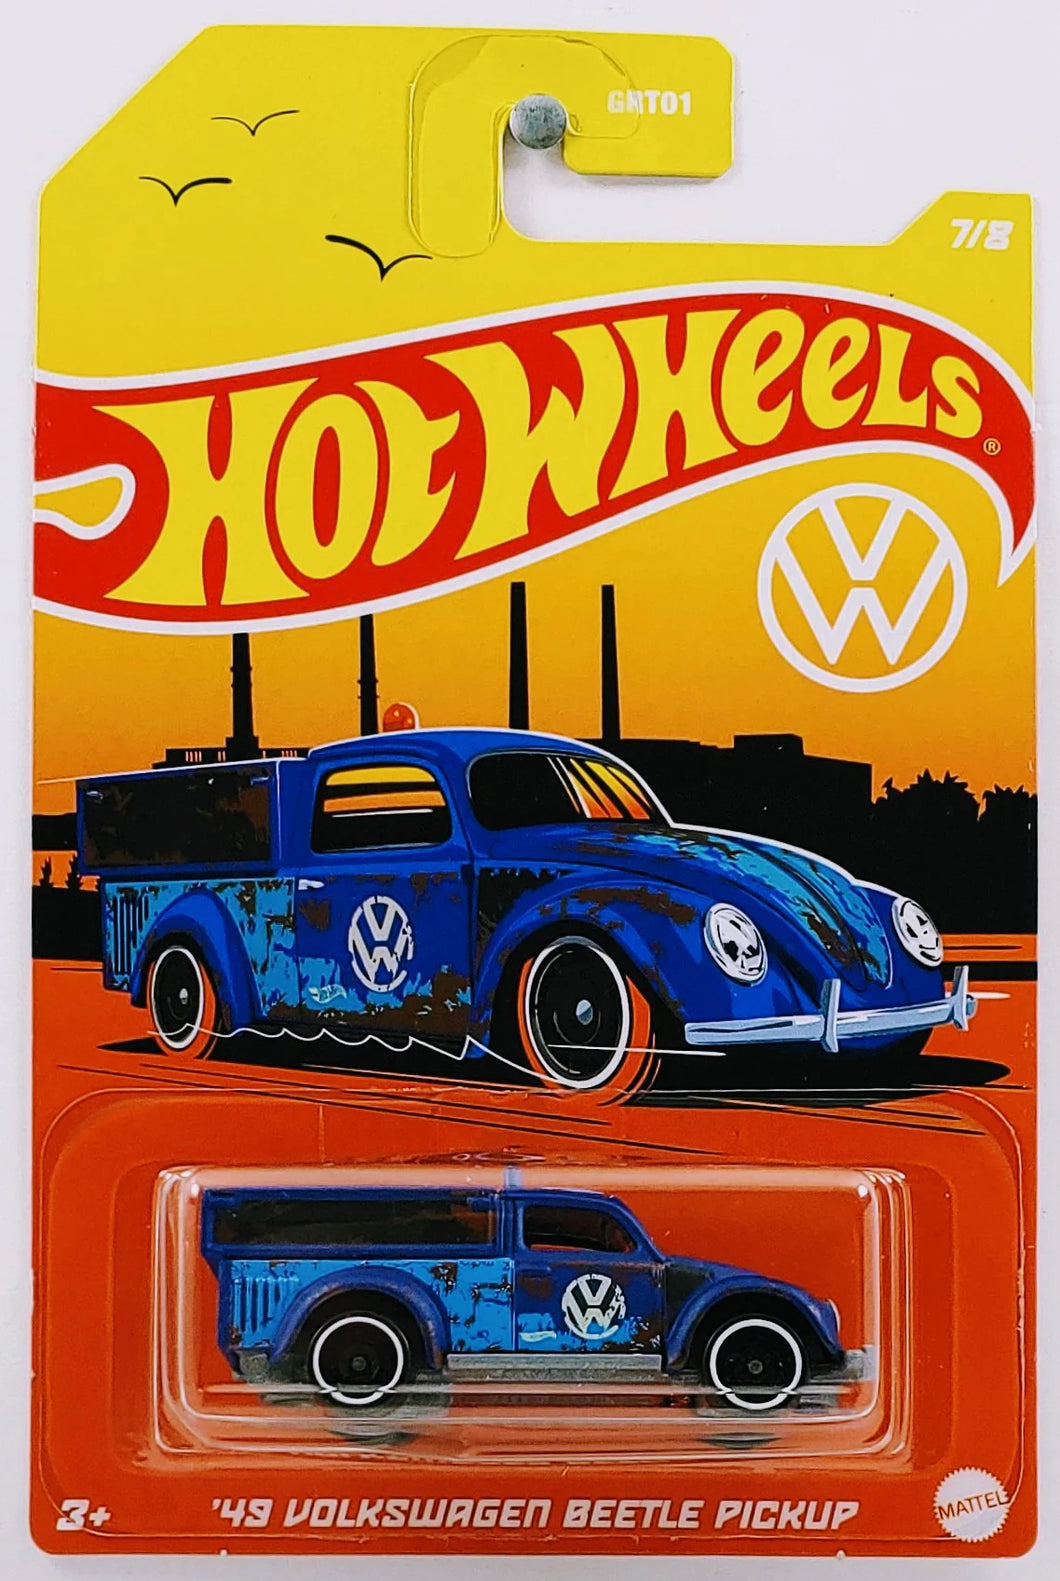 Hot Wheels Volkswagen Series 7/8 '49 Volkswagen Beetle Pickup - Walmart Exclusive